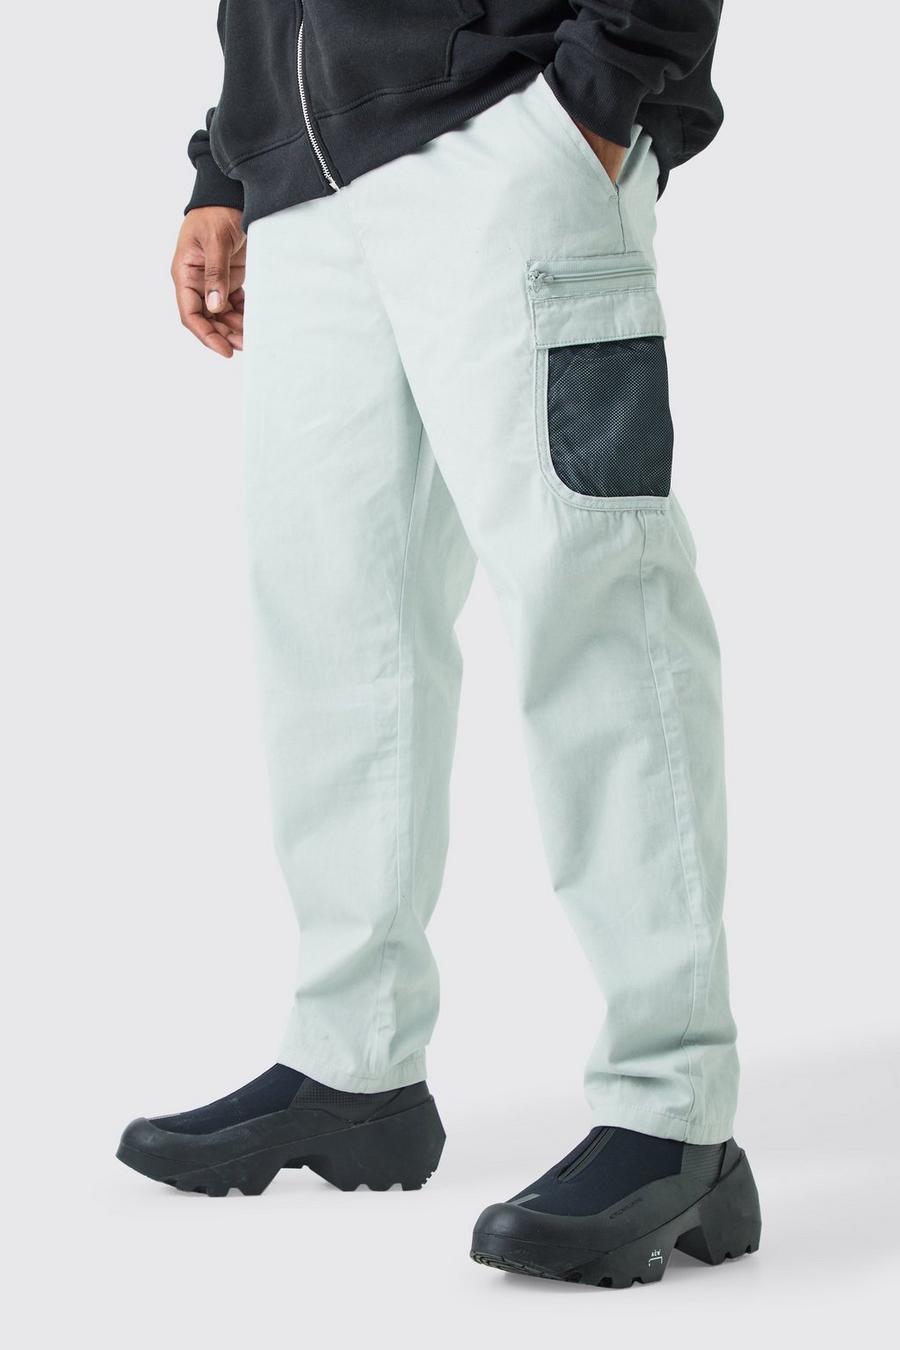 Pantalón Plus elástico cómodo de malla con bolsillos cargo, Light grey image number 1